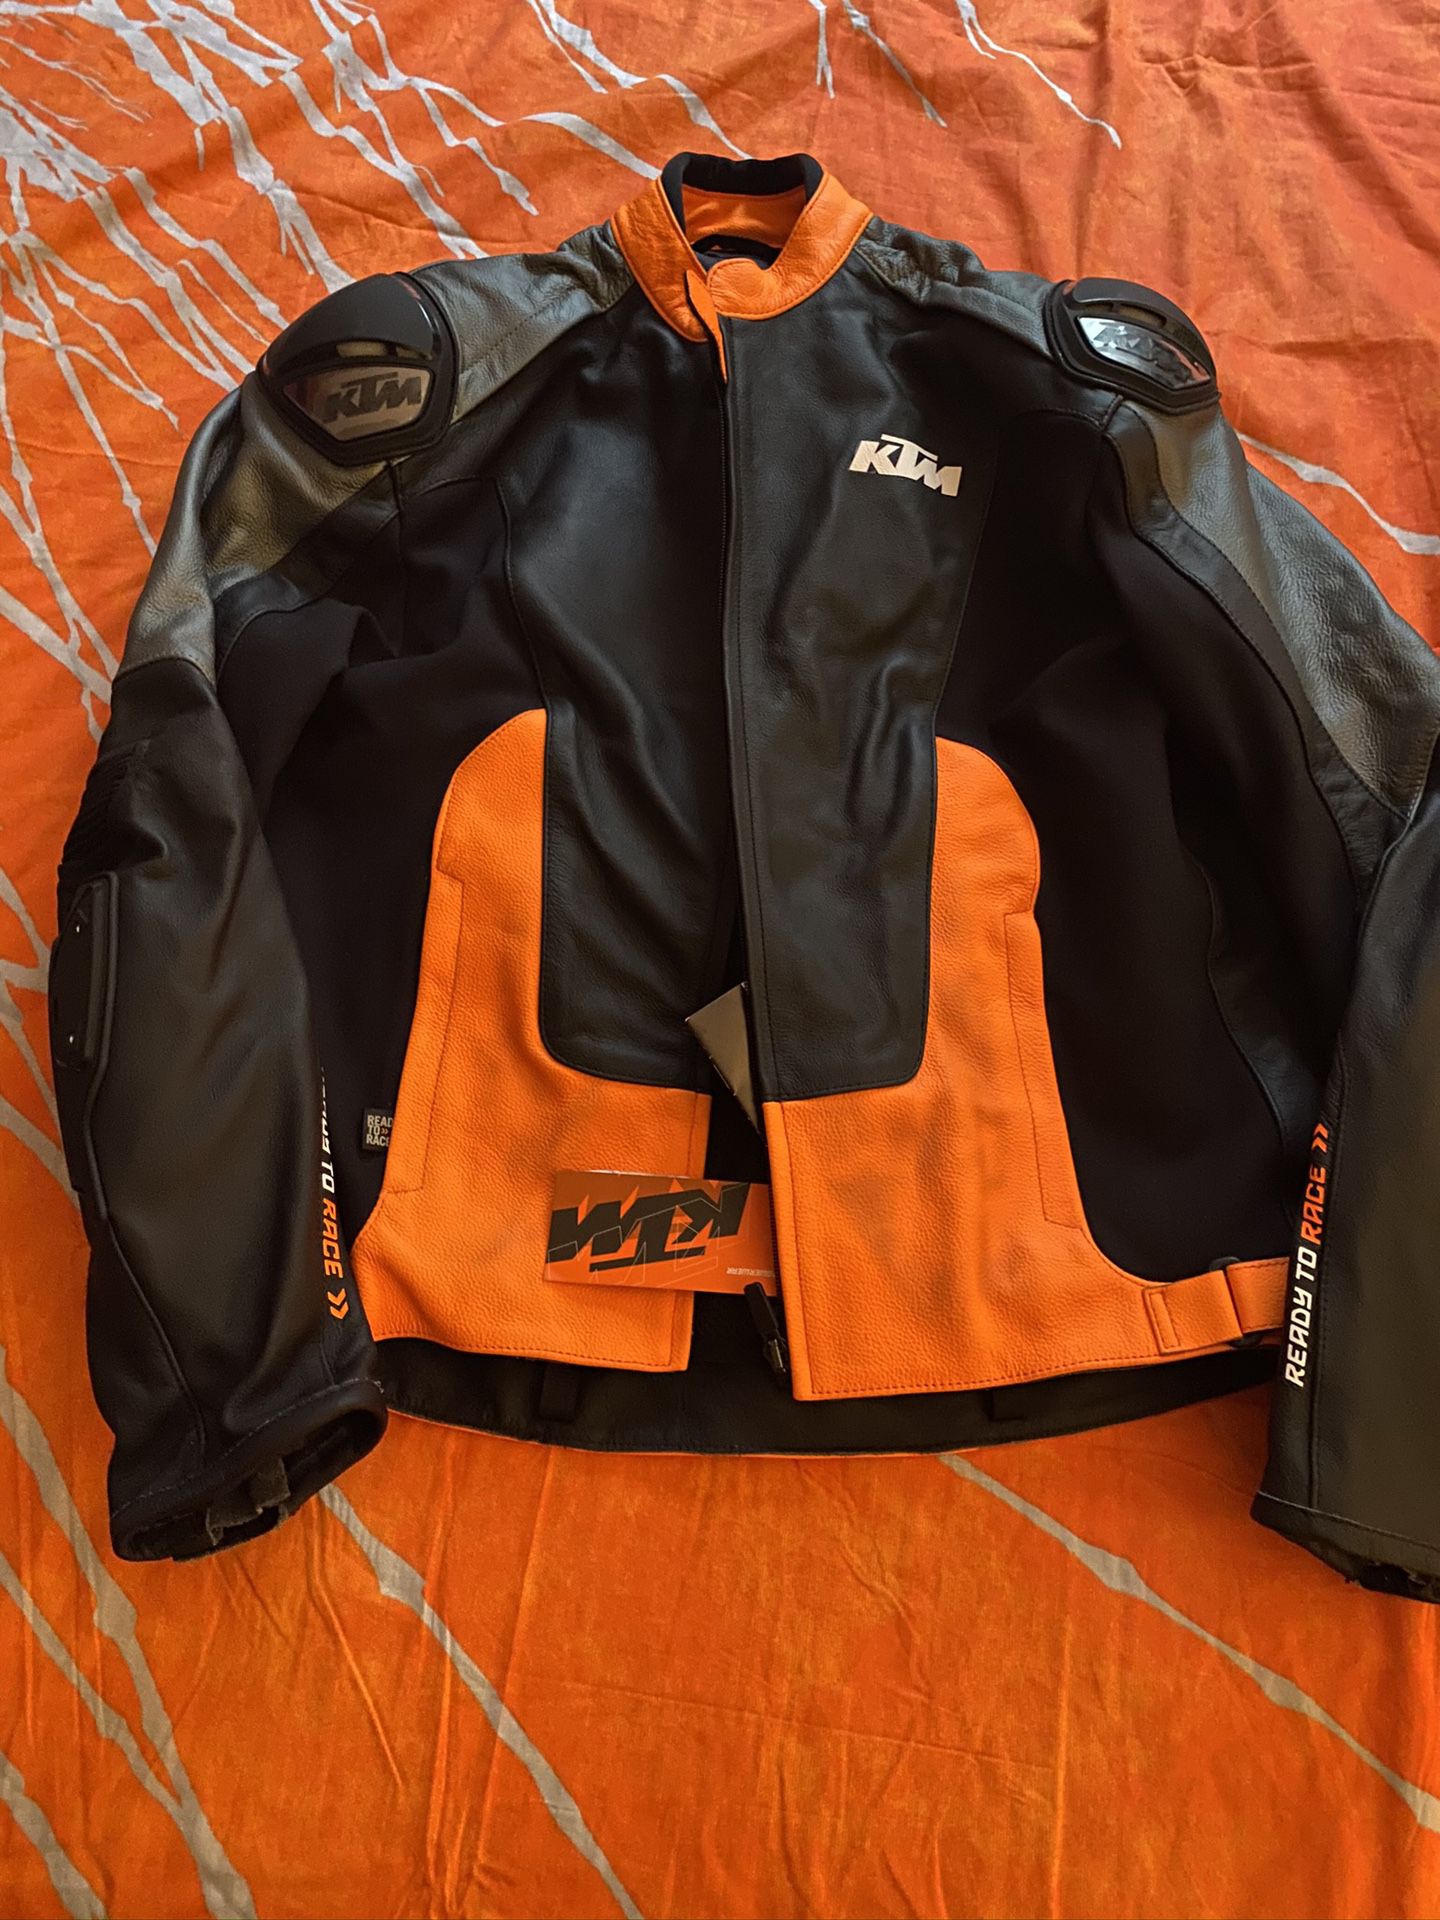 KTM leather motorcycle jacket